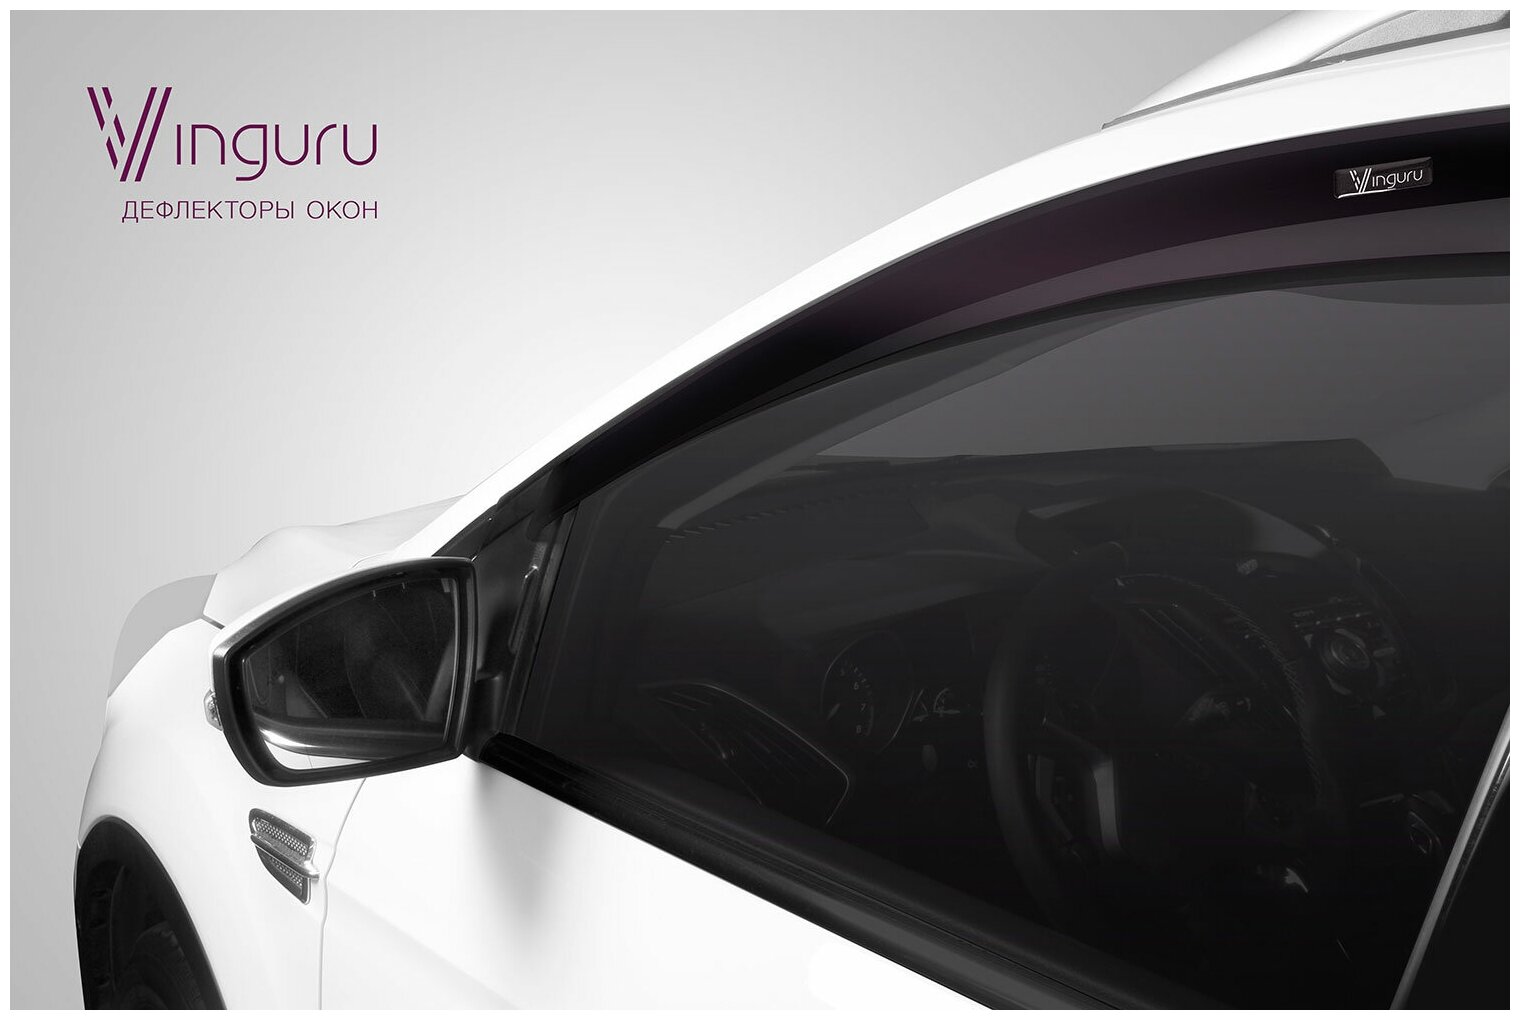 Дефлекторы окон Vinguru LADA Vesta 2015- седан накладные литьевой поликарбонат скотч 4 шт - фото №5